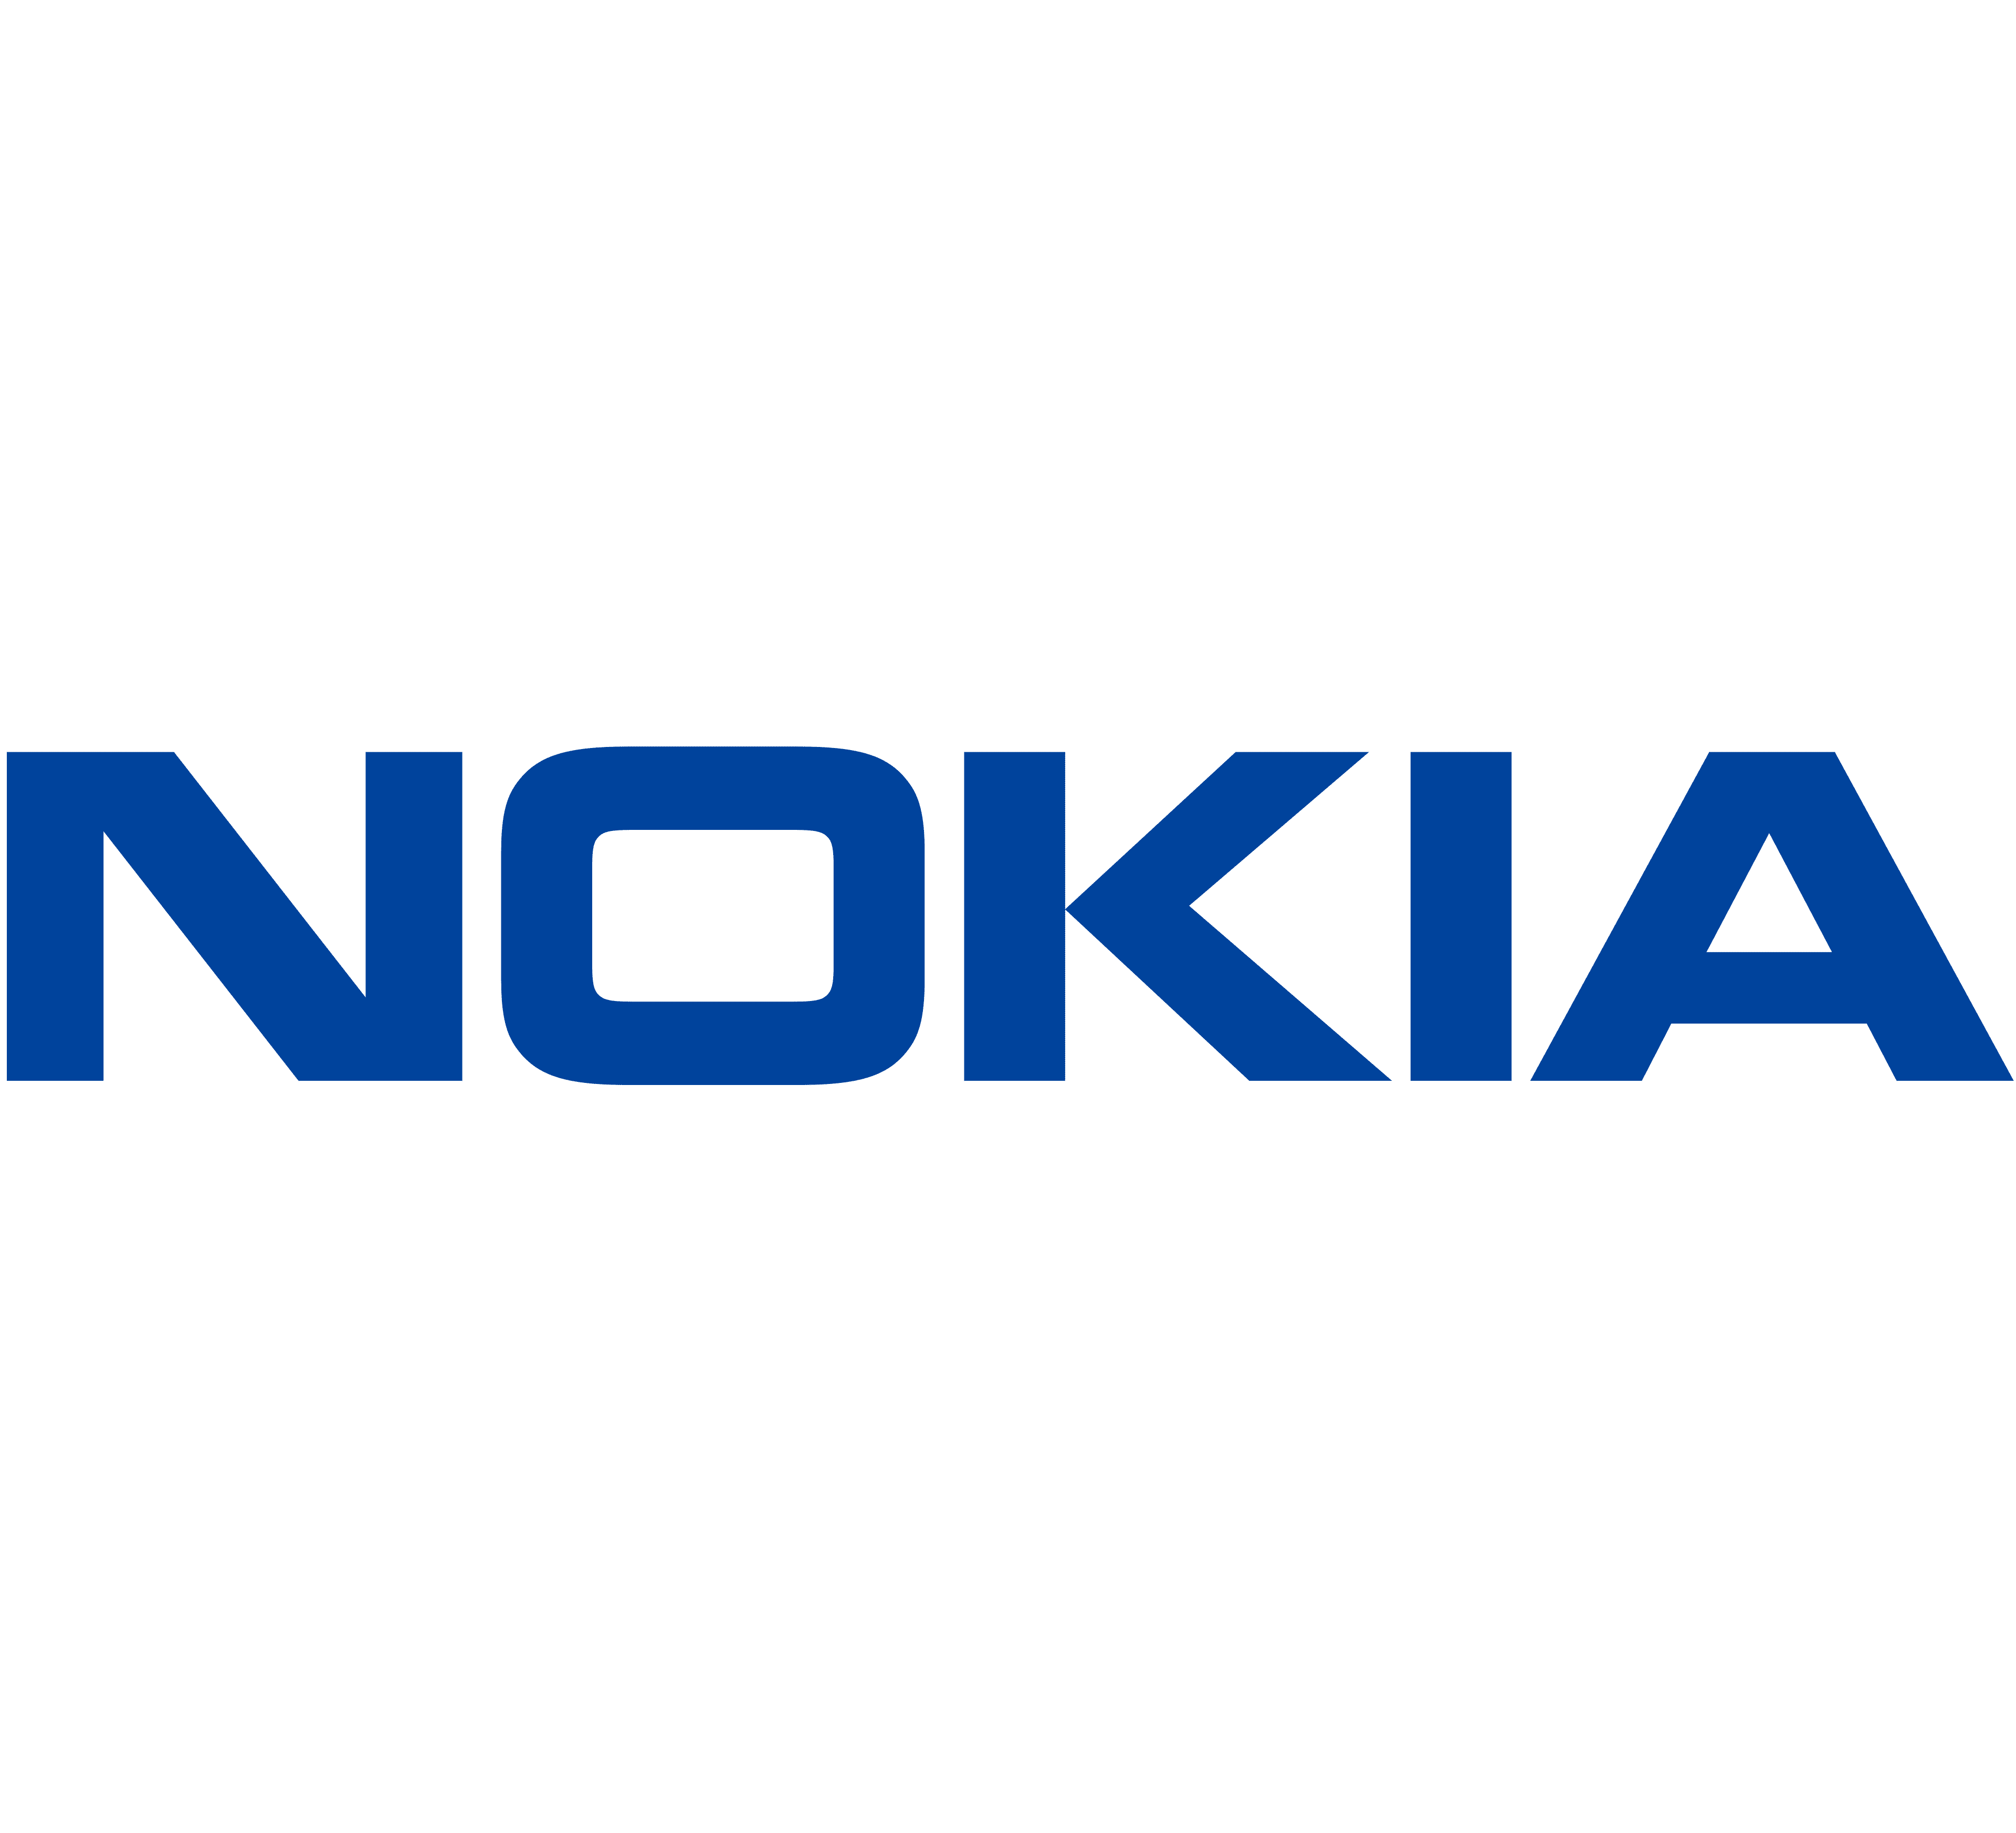  nokia logo